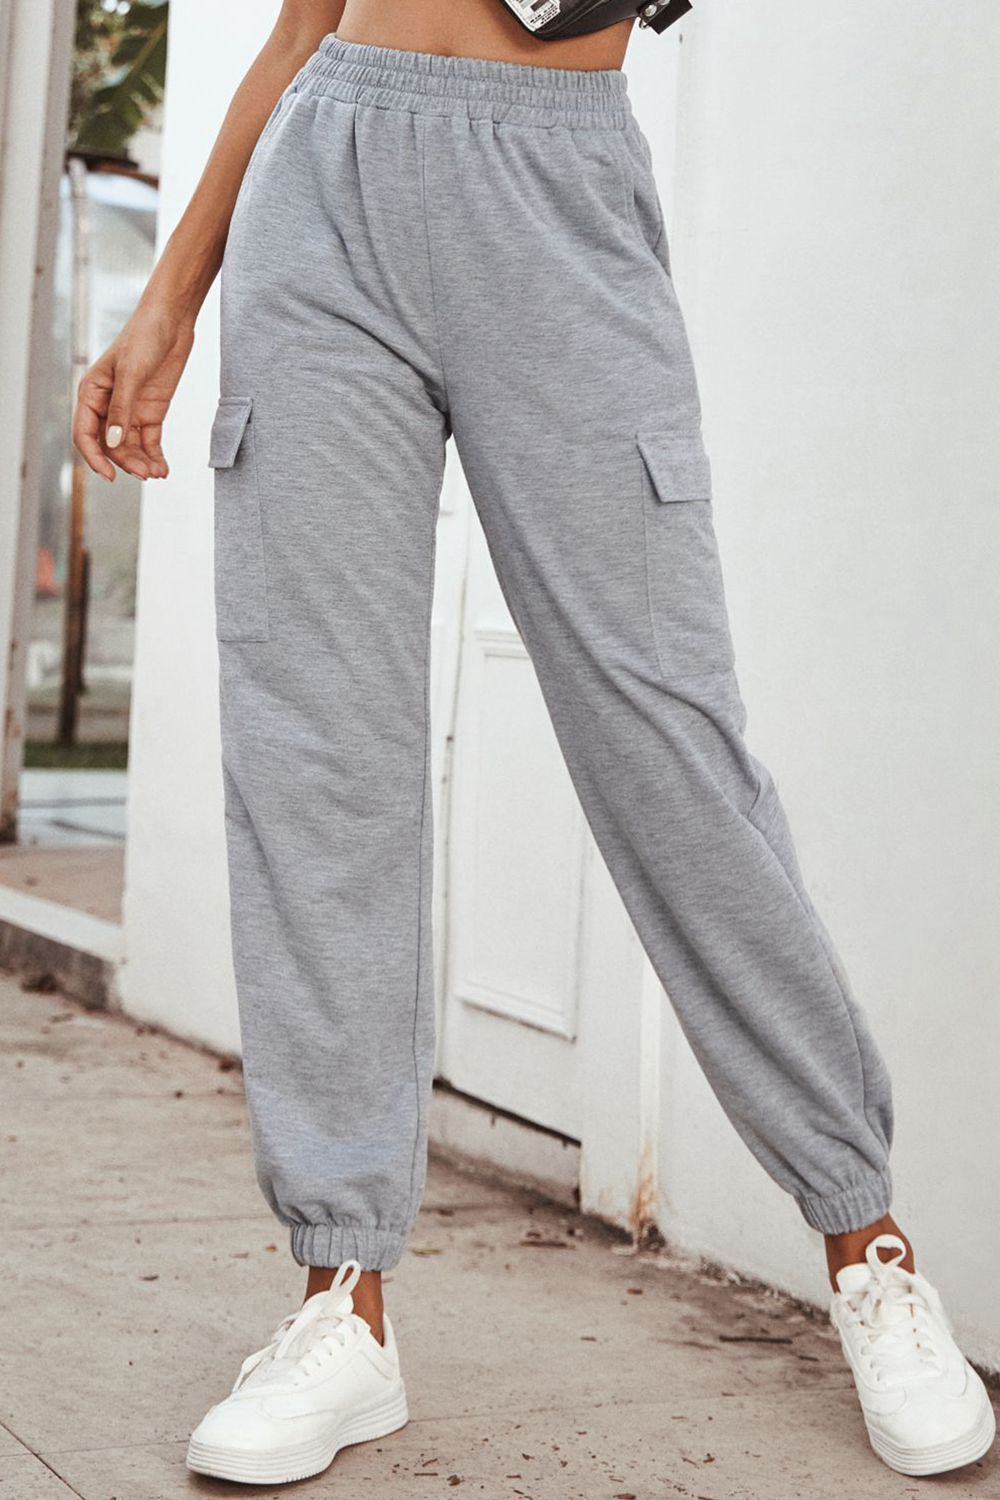 Comfy Casual Grey Sweatpants